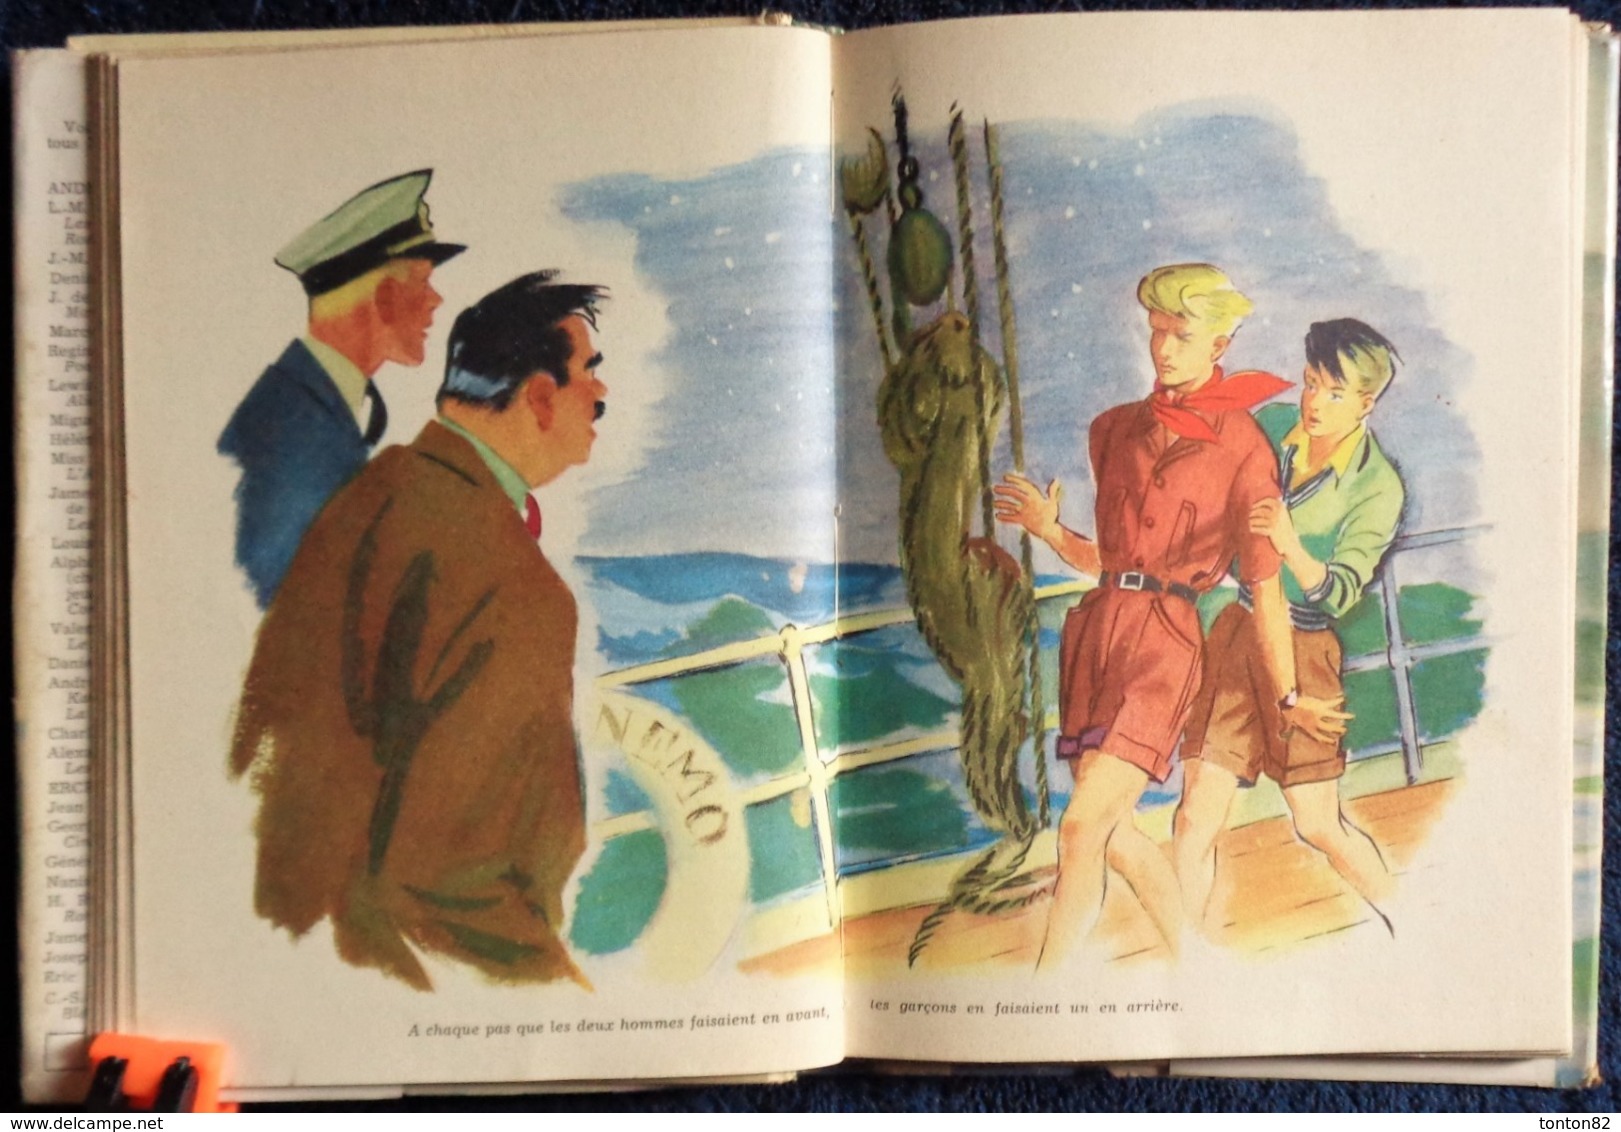 Colette Vivier - Le voyage aux Îles - Idéal Bibliothèque - ( 1954 ) .